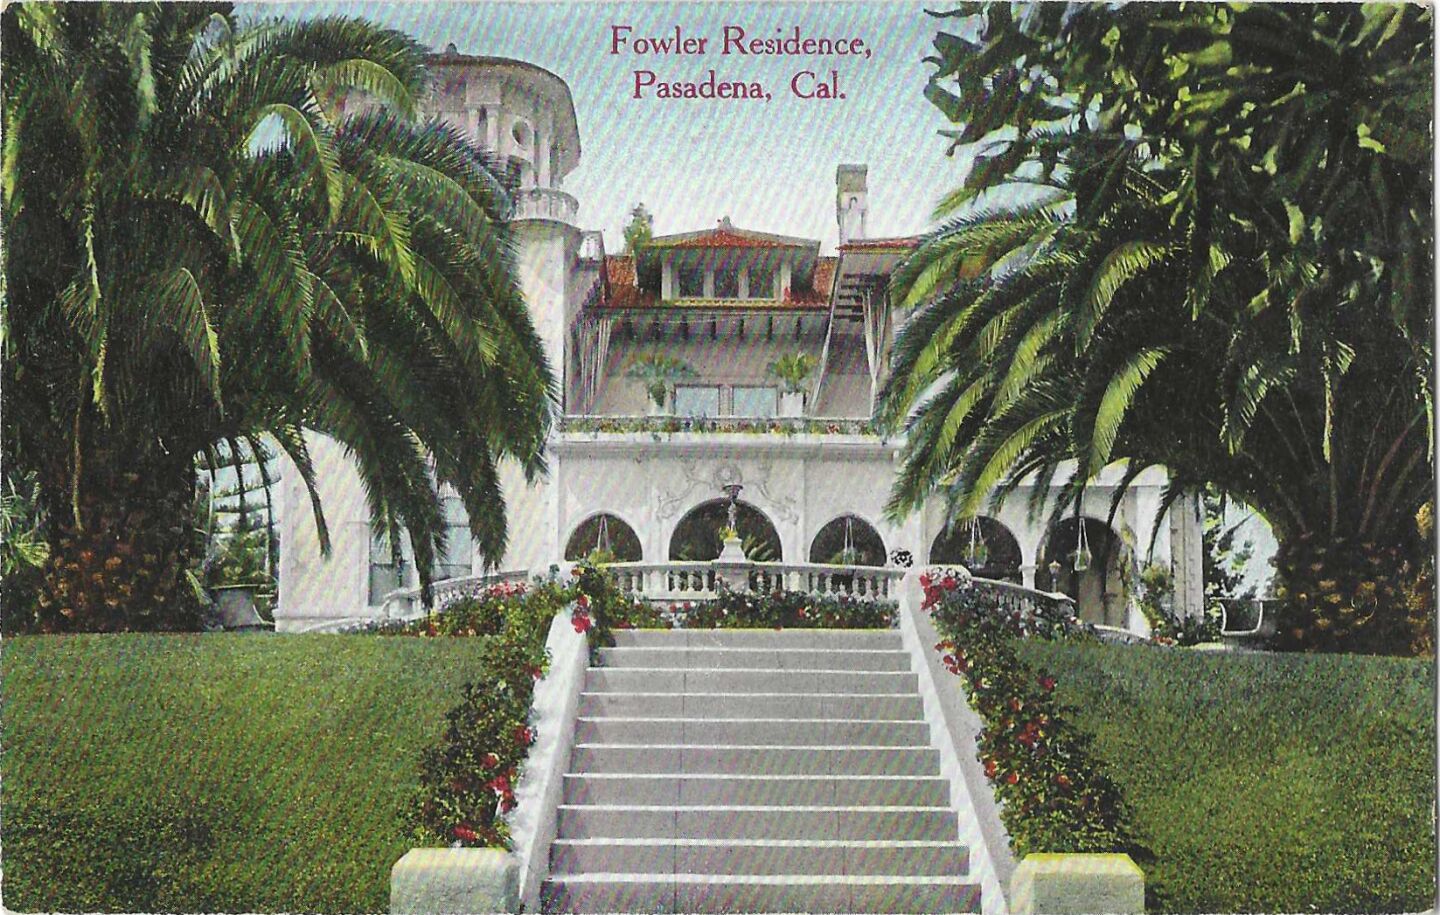 Fowler Residence, Pasadena, Cal.